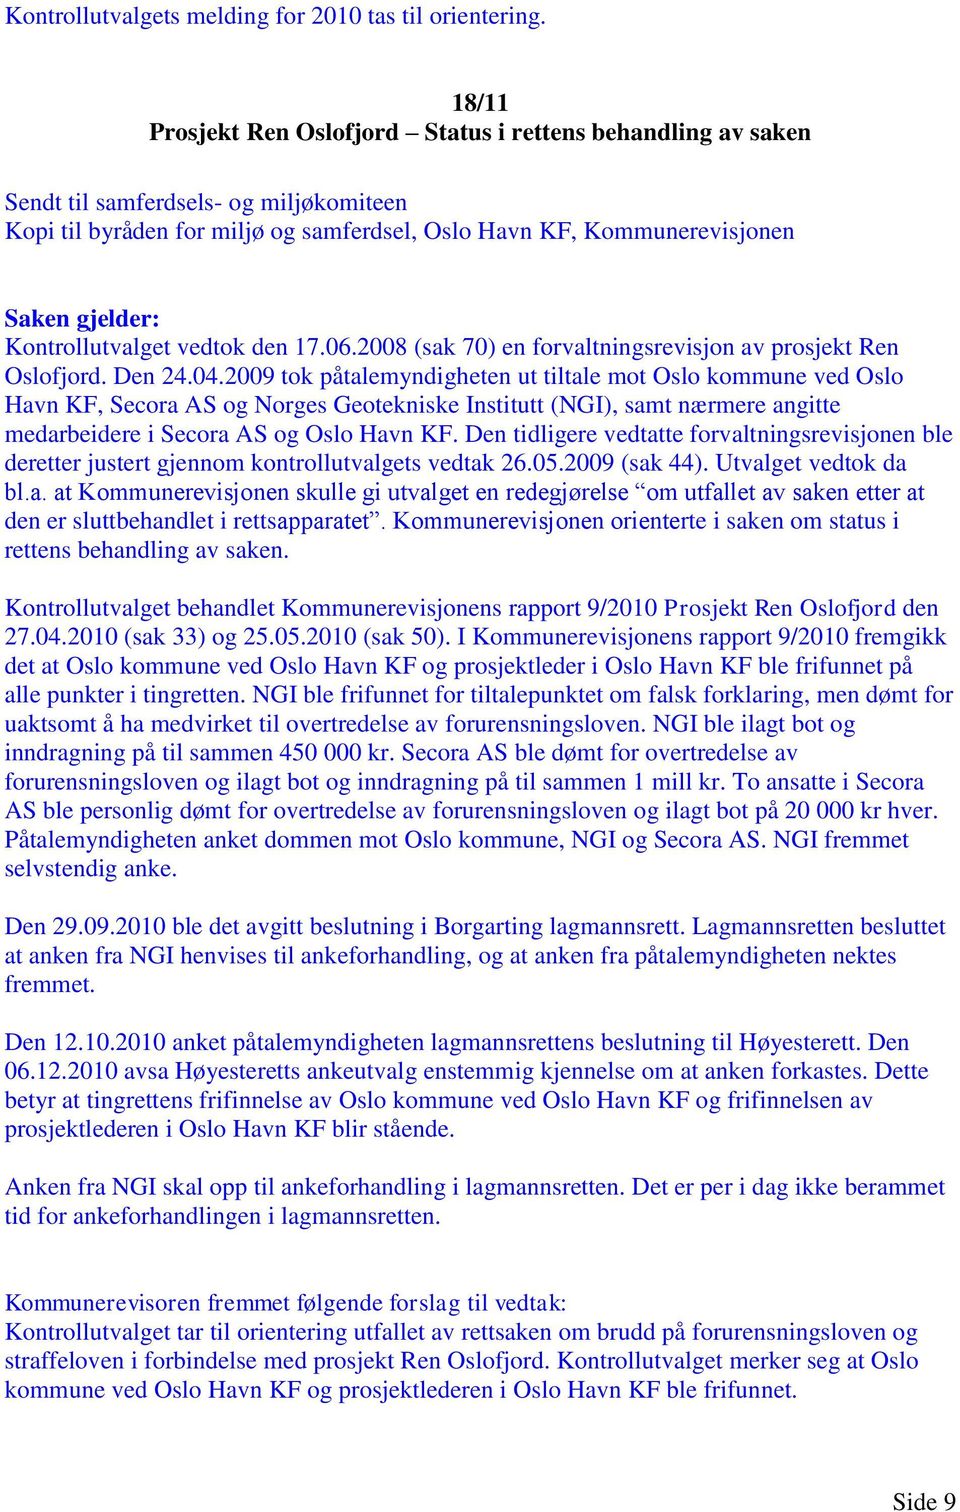 vedtok den 17.06.2008 (sak 70) en forvaltningsrevisjon av prosjekt Ren Oslofjord. Den 24.04.